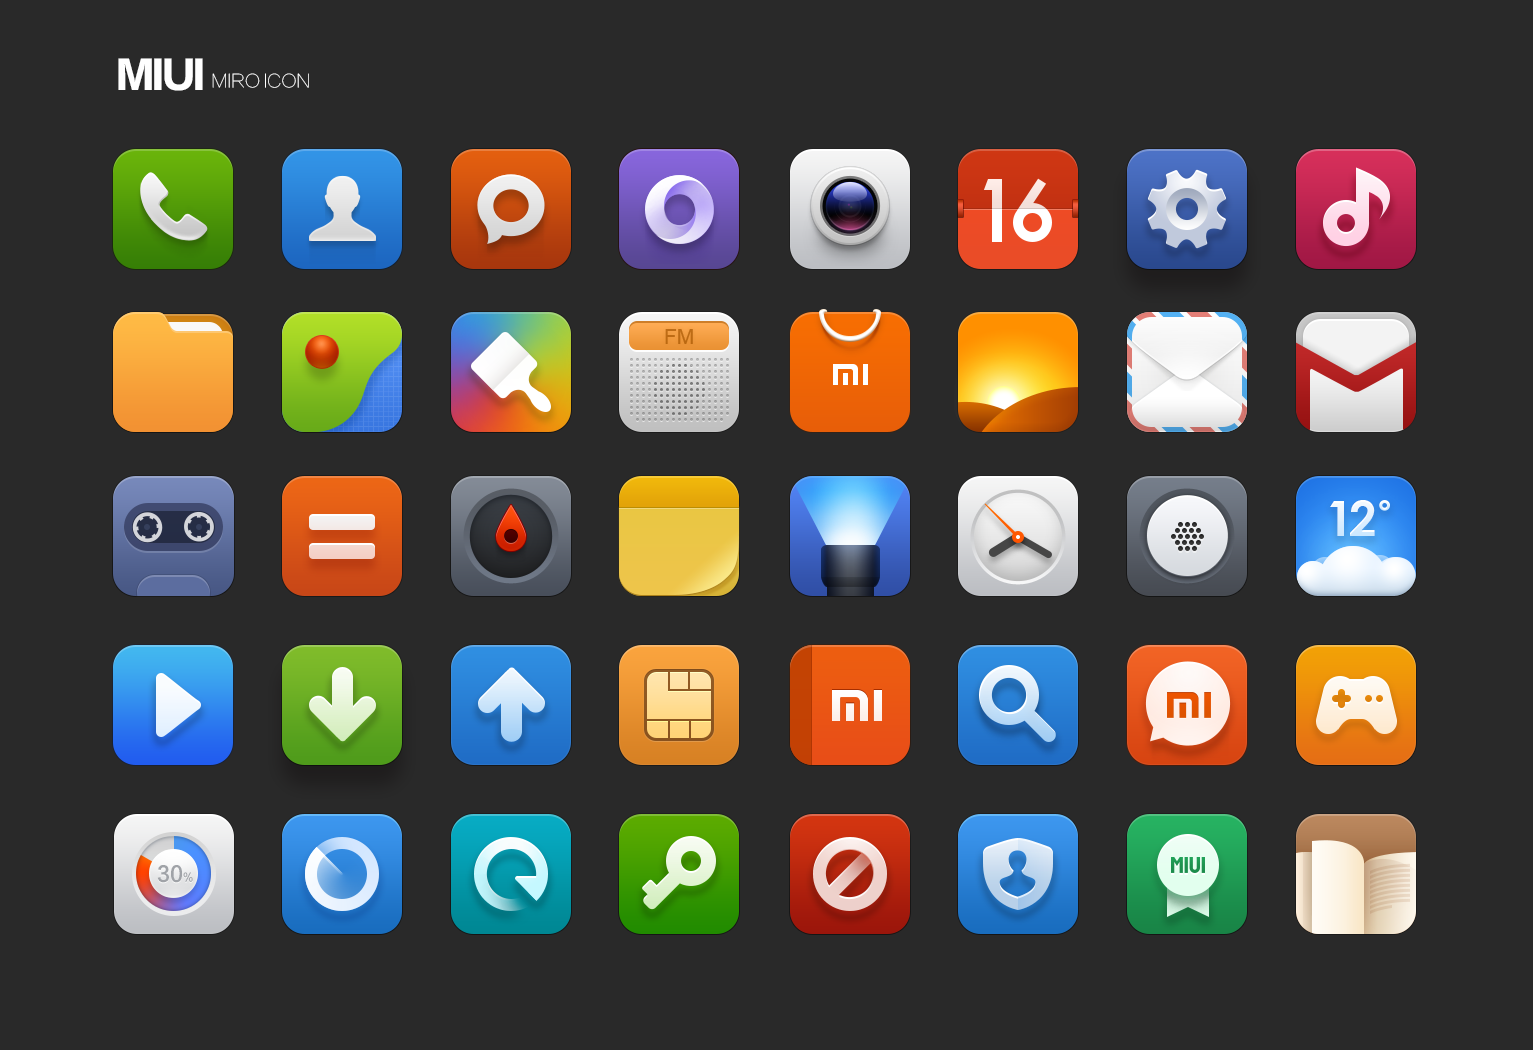 Значки на иконках андроид. MIUI v5 иконки. Красивые иконки для приложений. Иконки приложений для андроид. Иконки для приложений Android.